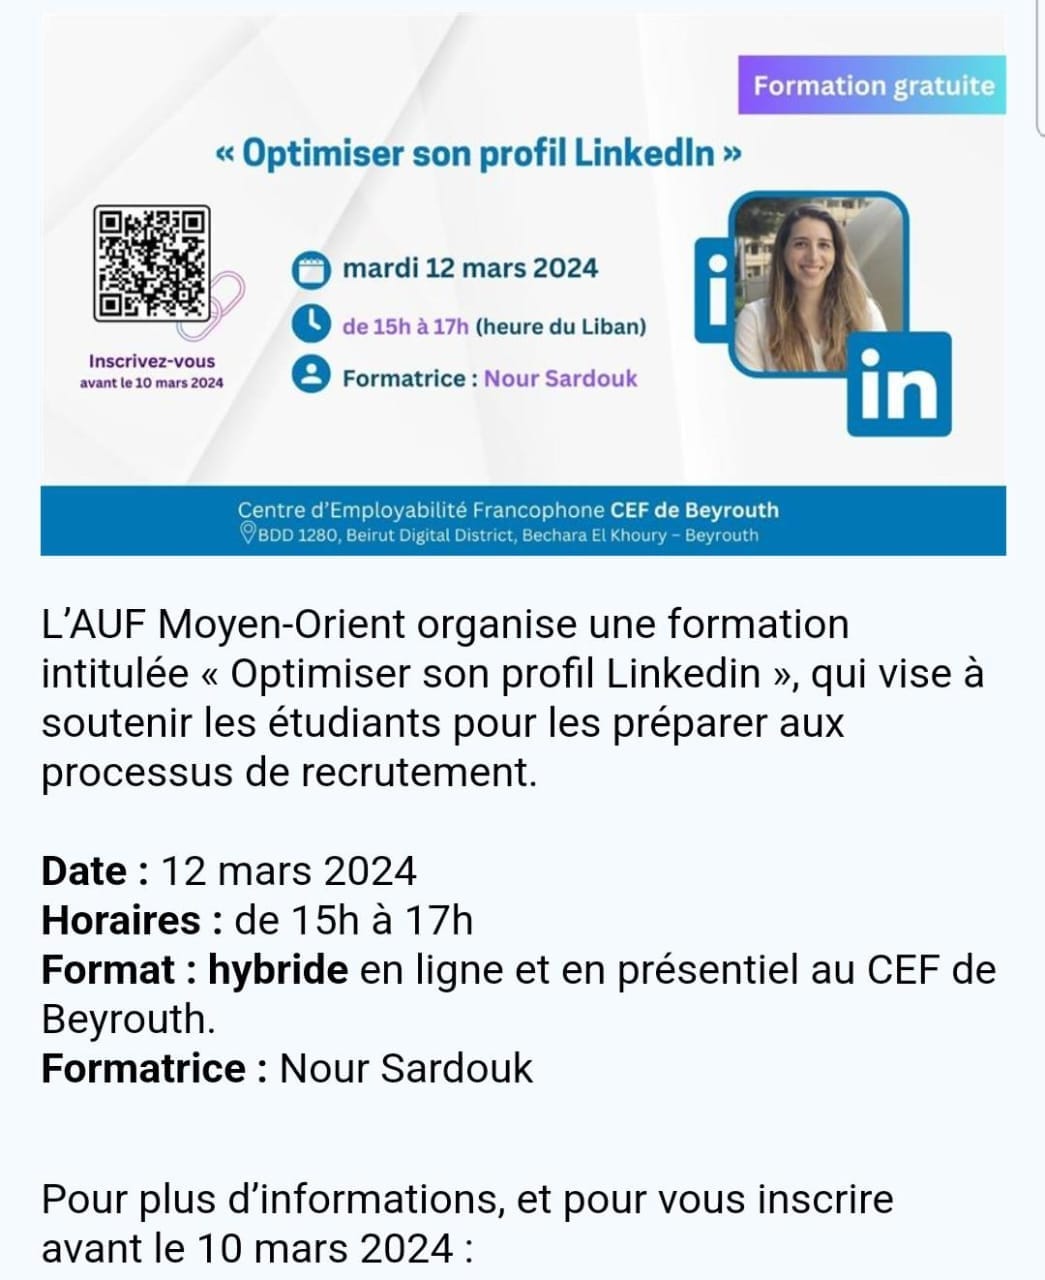 “Improving Your LinkedIn Profile” Workshop